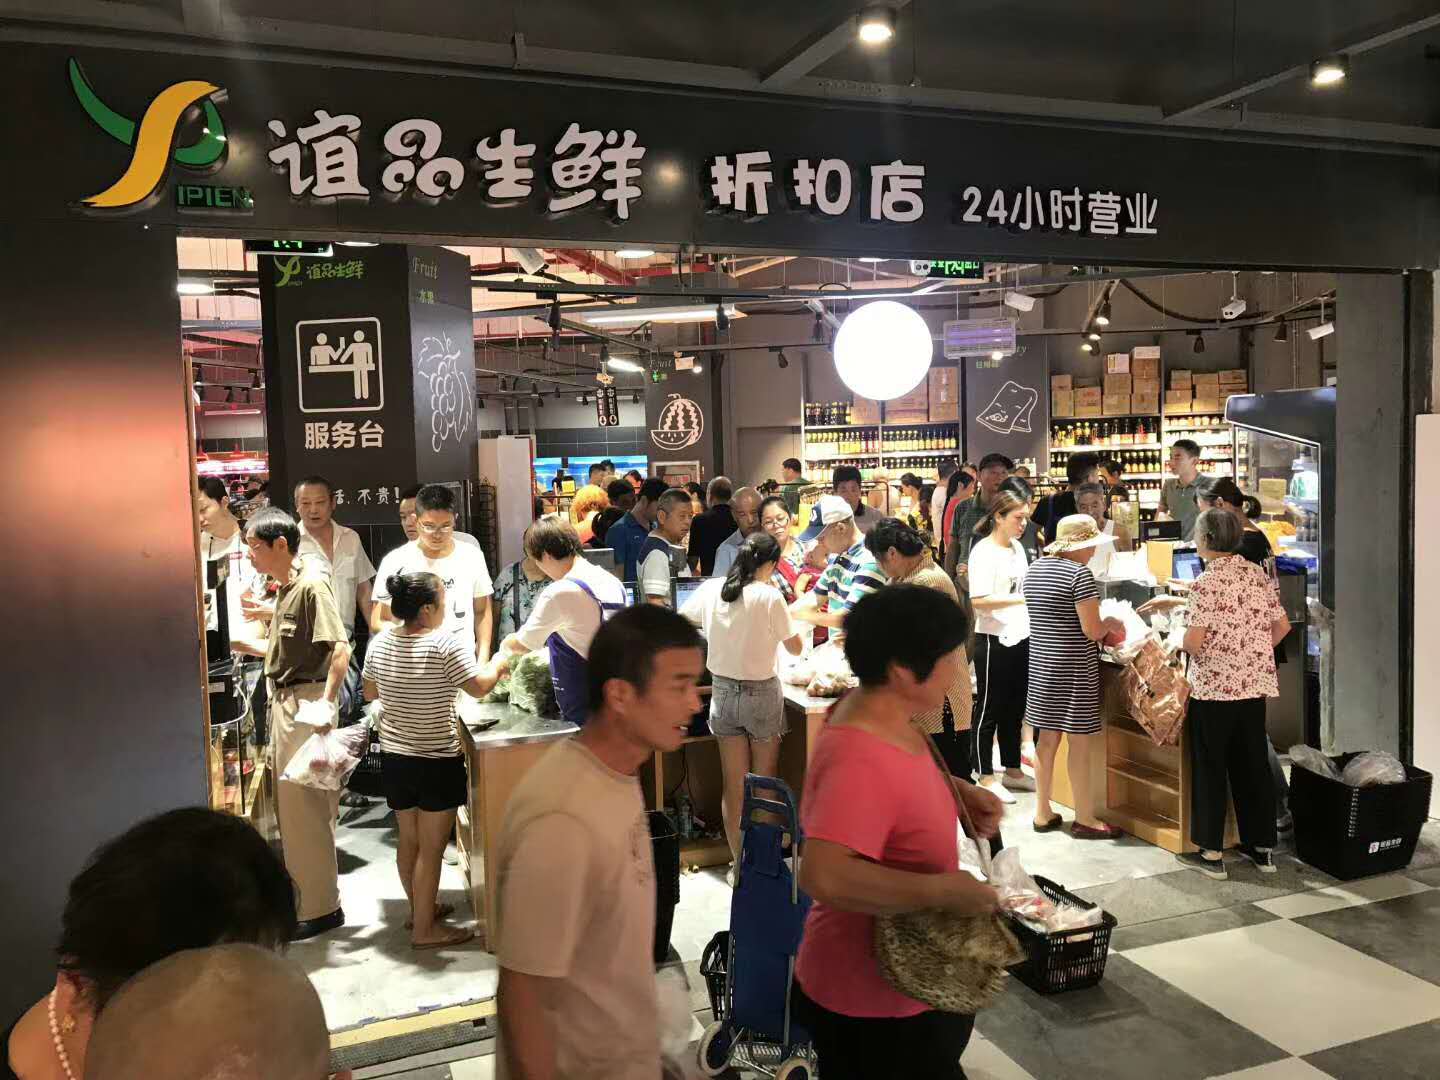 热烈庆祝 苏尚小生活(左邻右里店) 一楼正式试营业